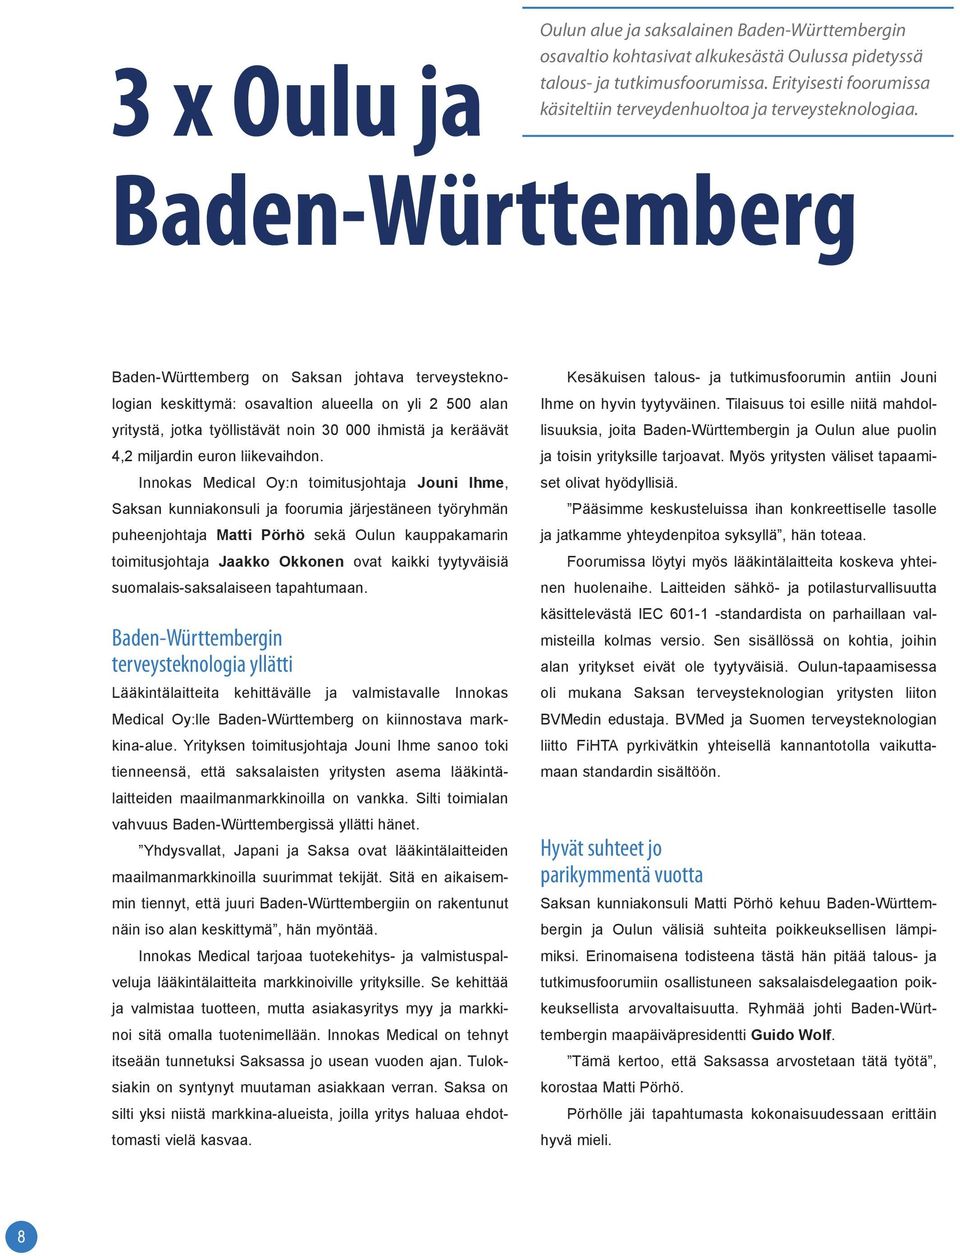 3 x Oulu ja Baden-Württemberg Baden-Württemberg on Saksan johtava terveysteknologian keskittymä: osavaltion alueella on yli 2 500 alan yritystä, jotka työllistävät noin 30 000 ihmistä ja keräävät 4,2